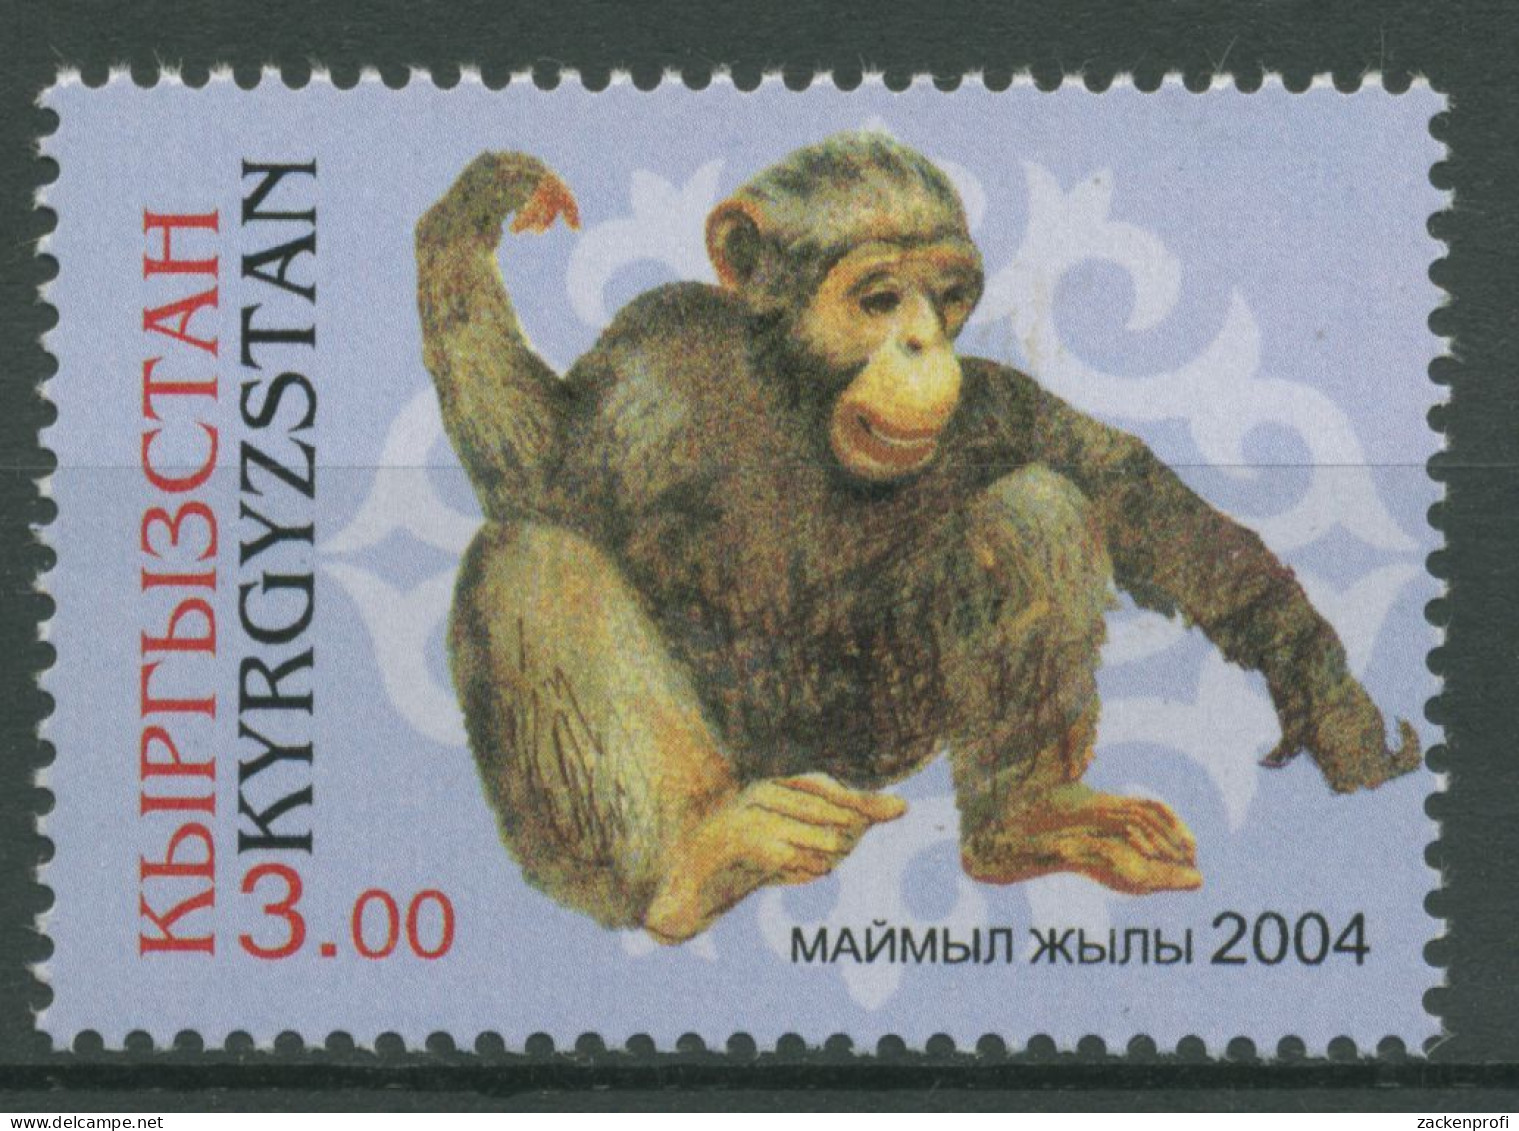 Kirgisien 2004 Chinesisches Neujahr Jahr Des Affen 373 Postfrisch - Kyrgyzstan